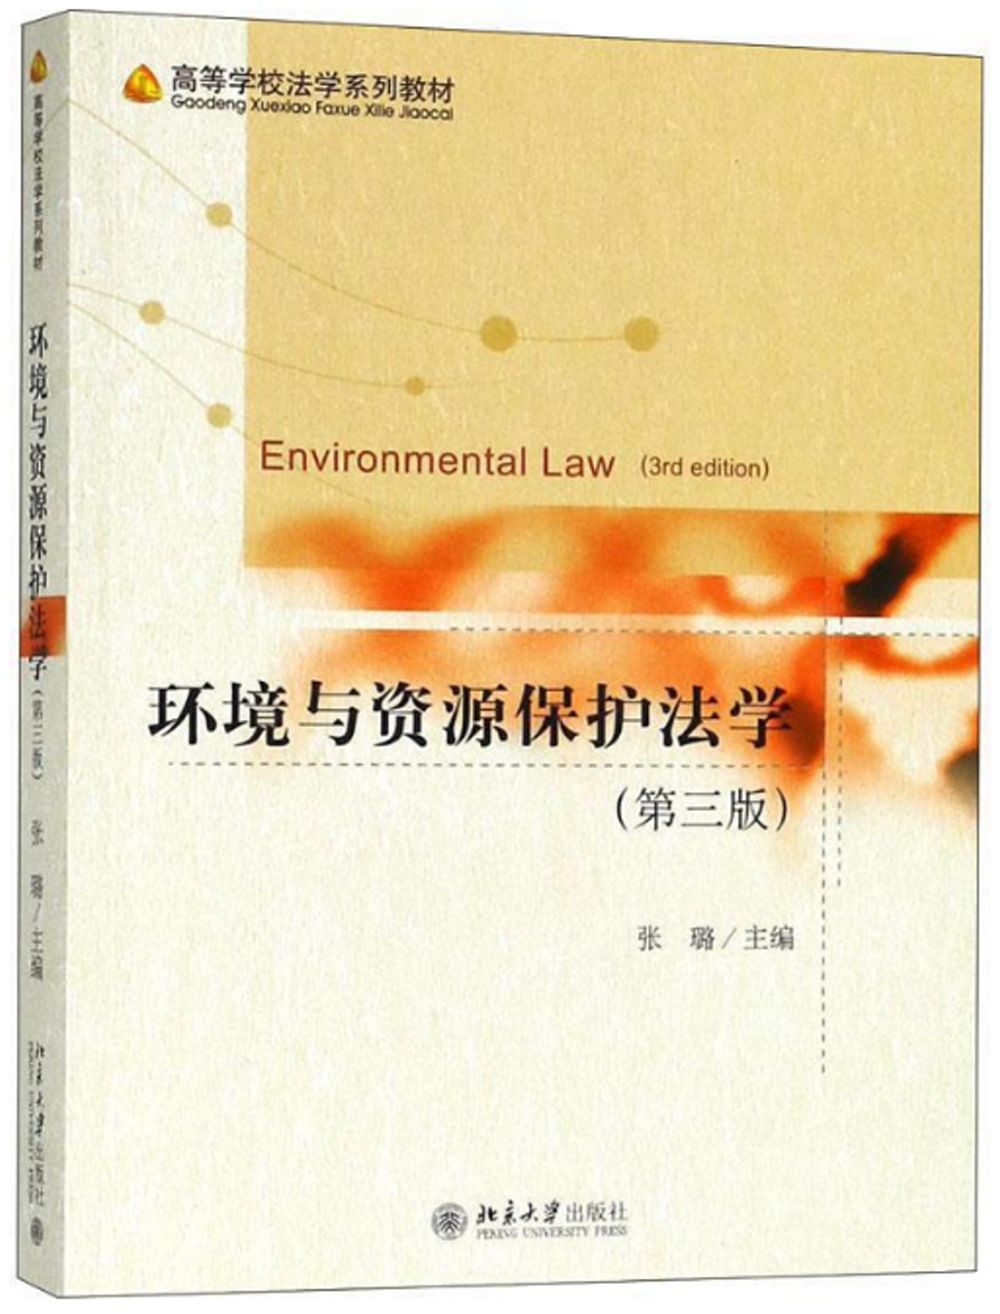 環境與資源保護法學（第三版）